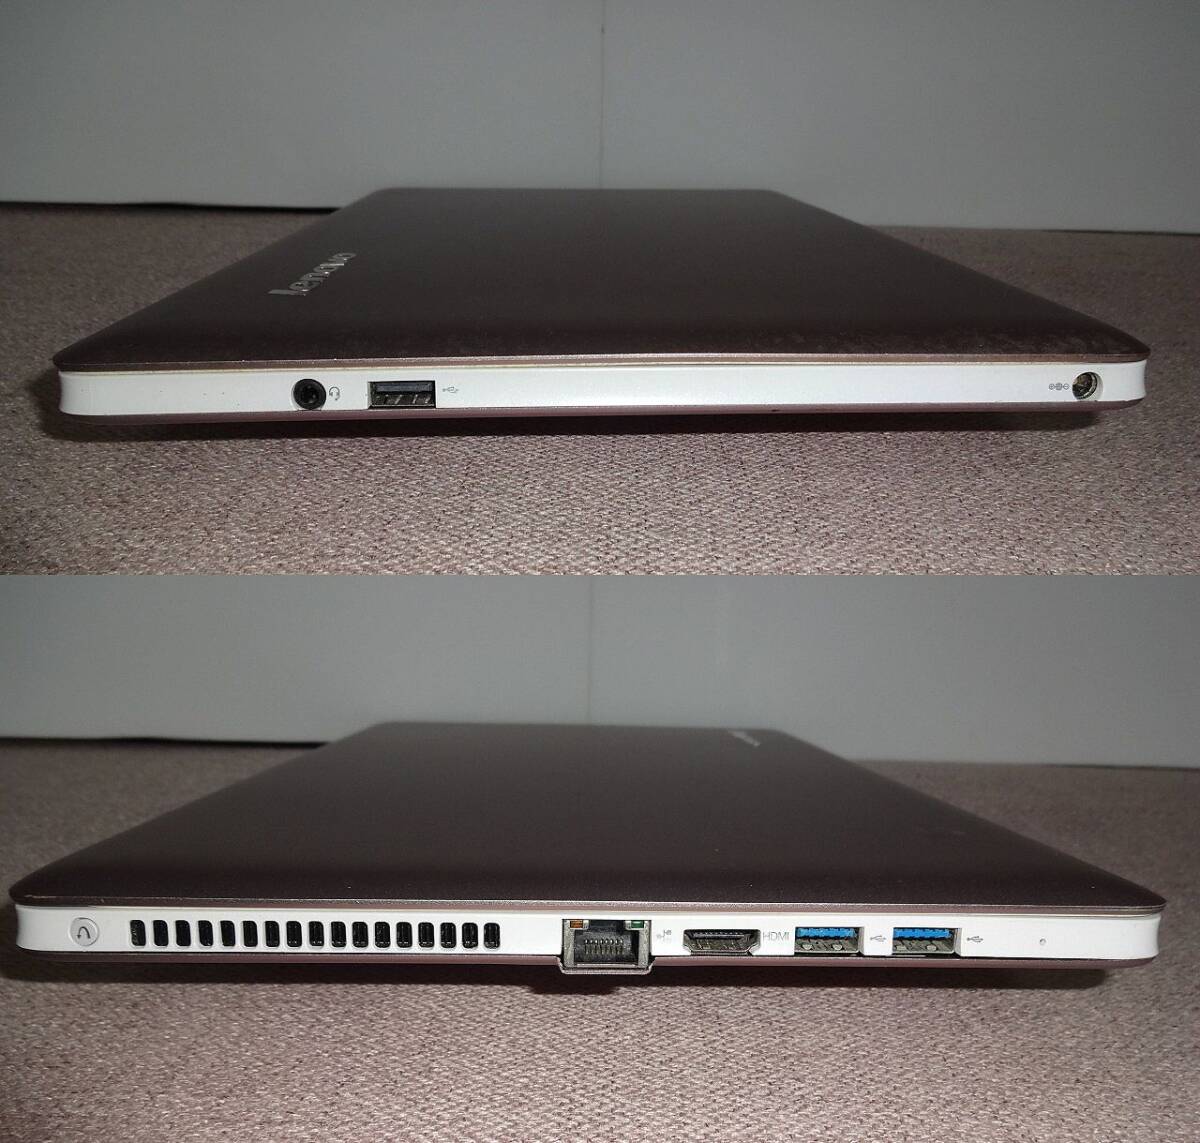 lenovo IdeaPad U310 Core i5/Mem4G/HDD320G secondhand goods junk treatment 